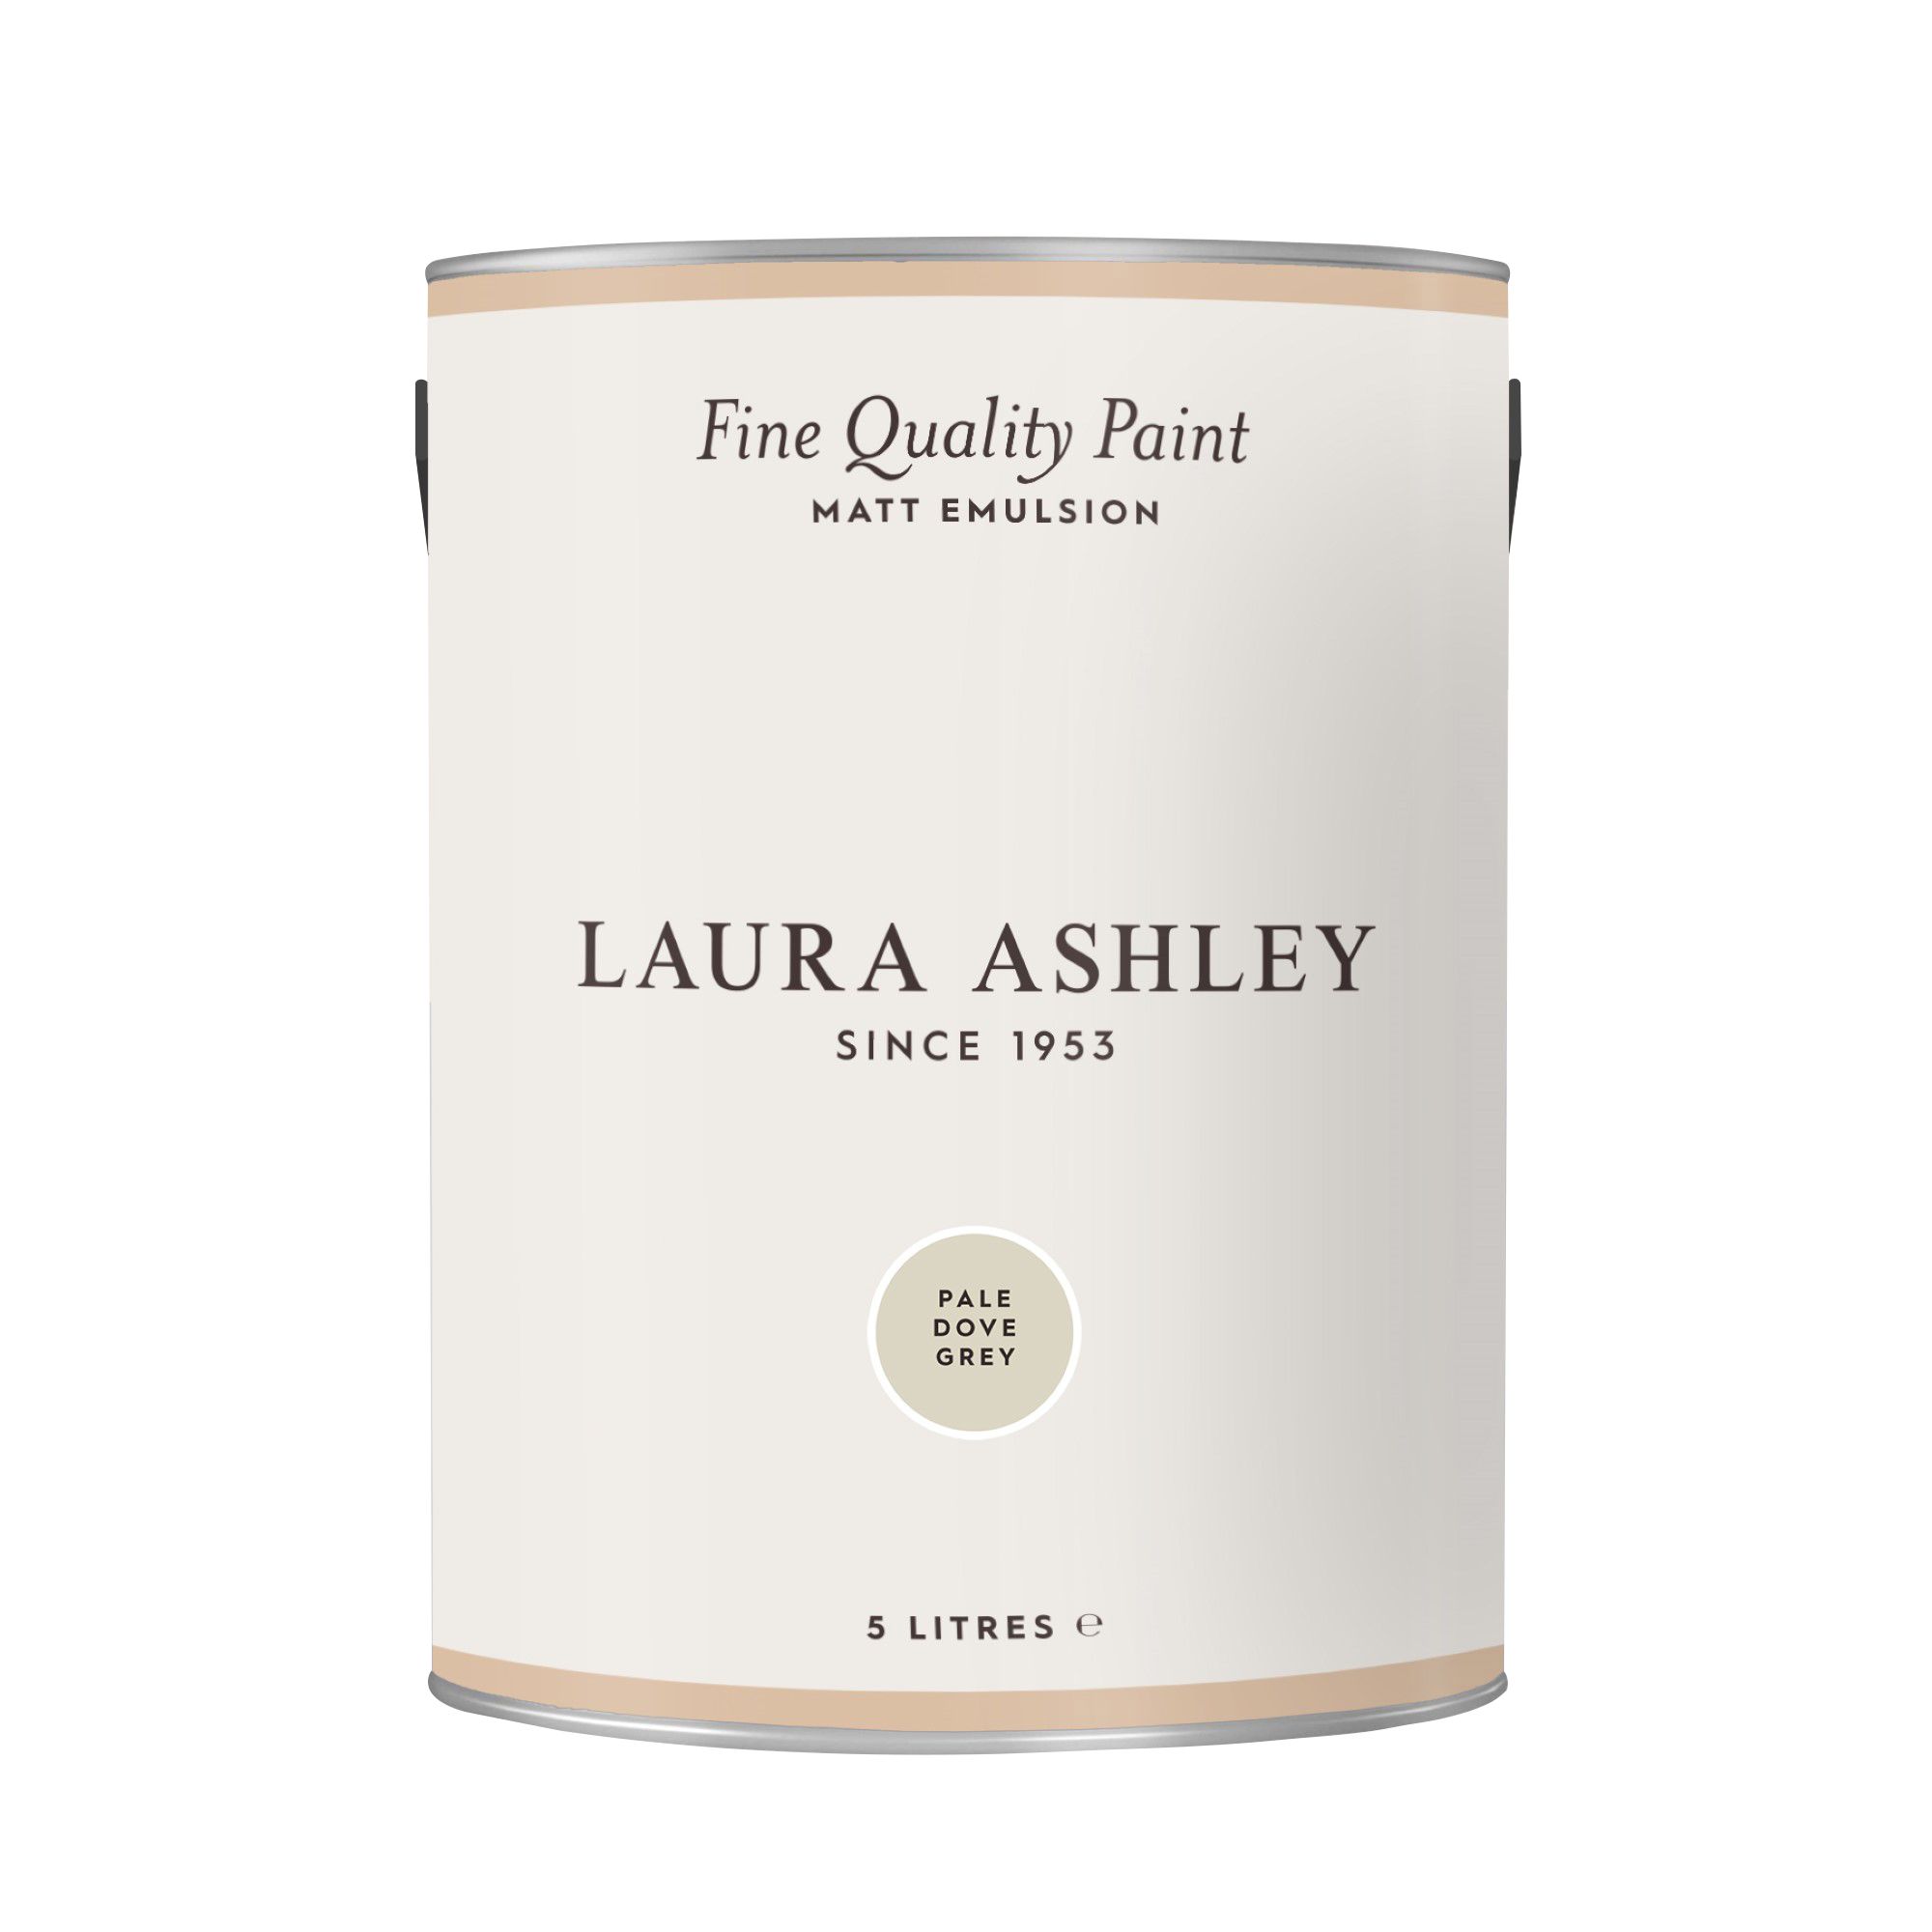 Laura Ashley Pale Dove Grey Matt Emulsion paint, 5L